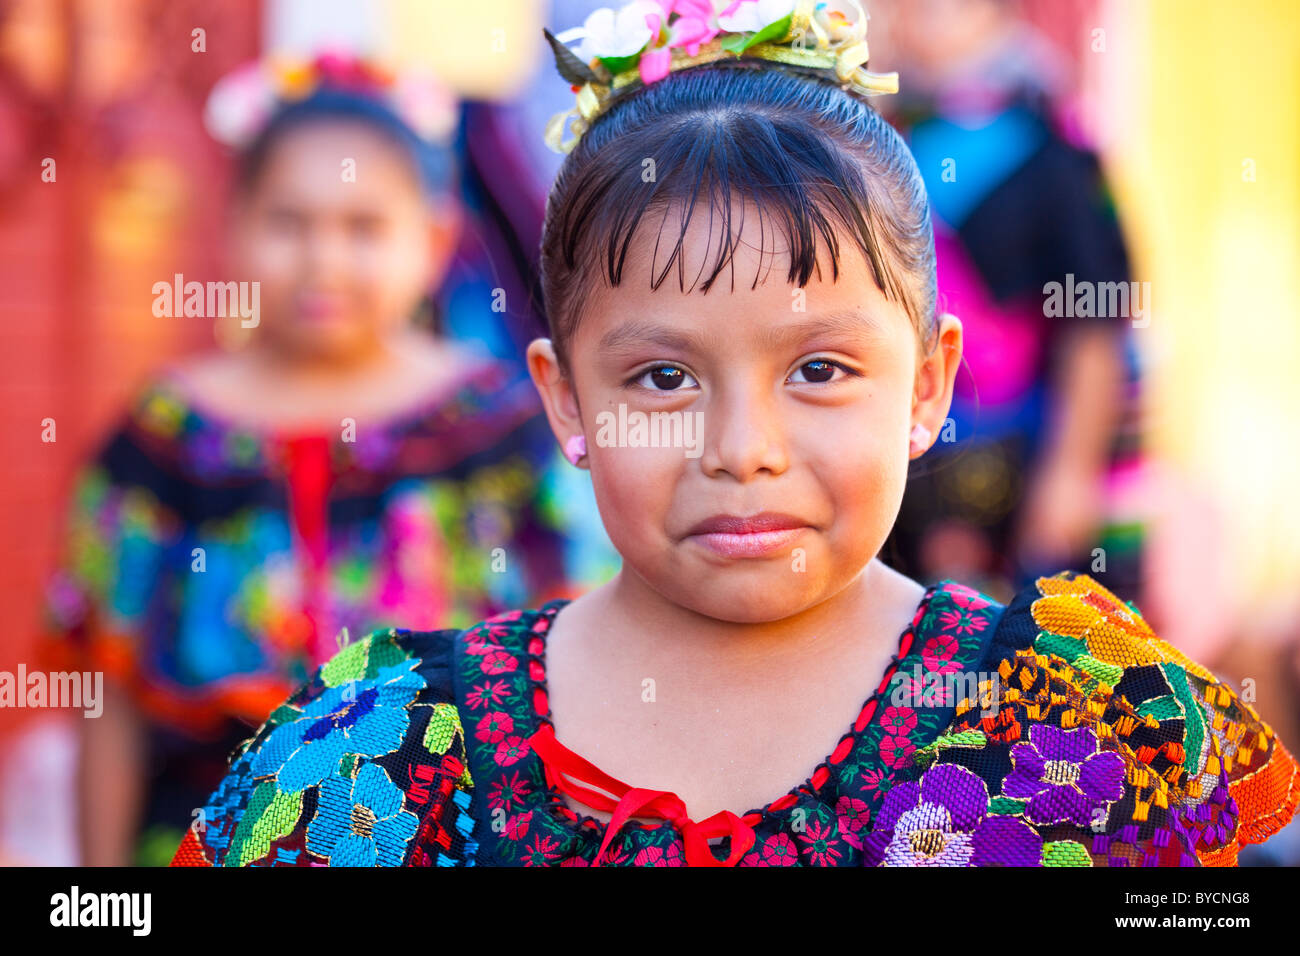 Grande Fiesta ou le Grand Festival, Chiapa de Corzo, Chiapas, Mexique Banque D'Images